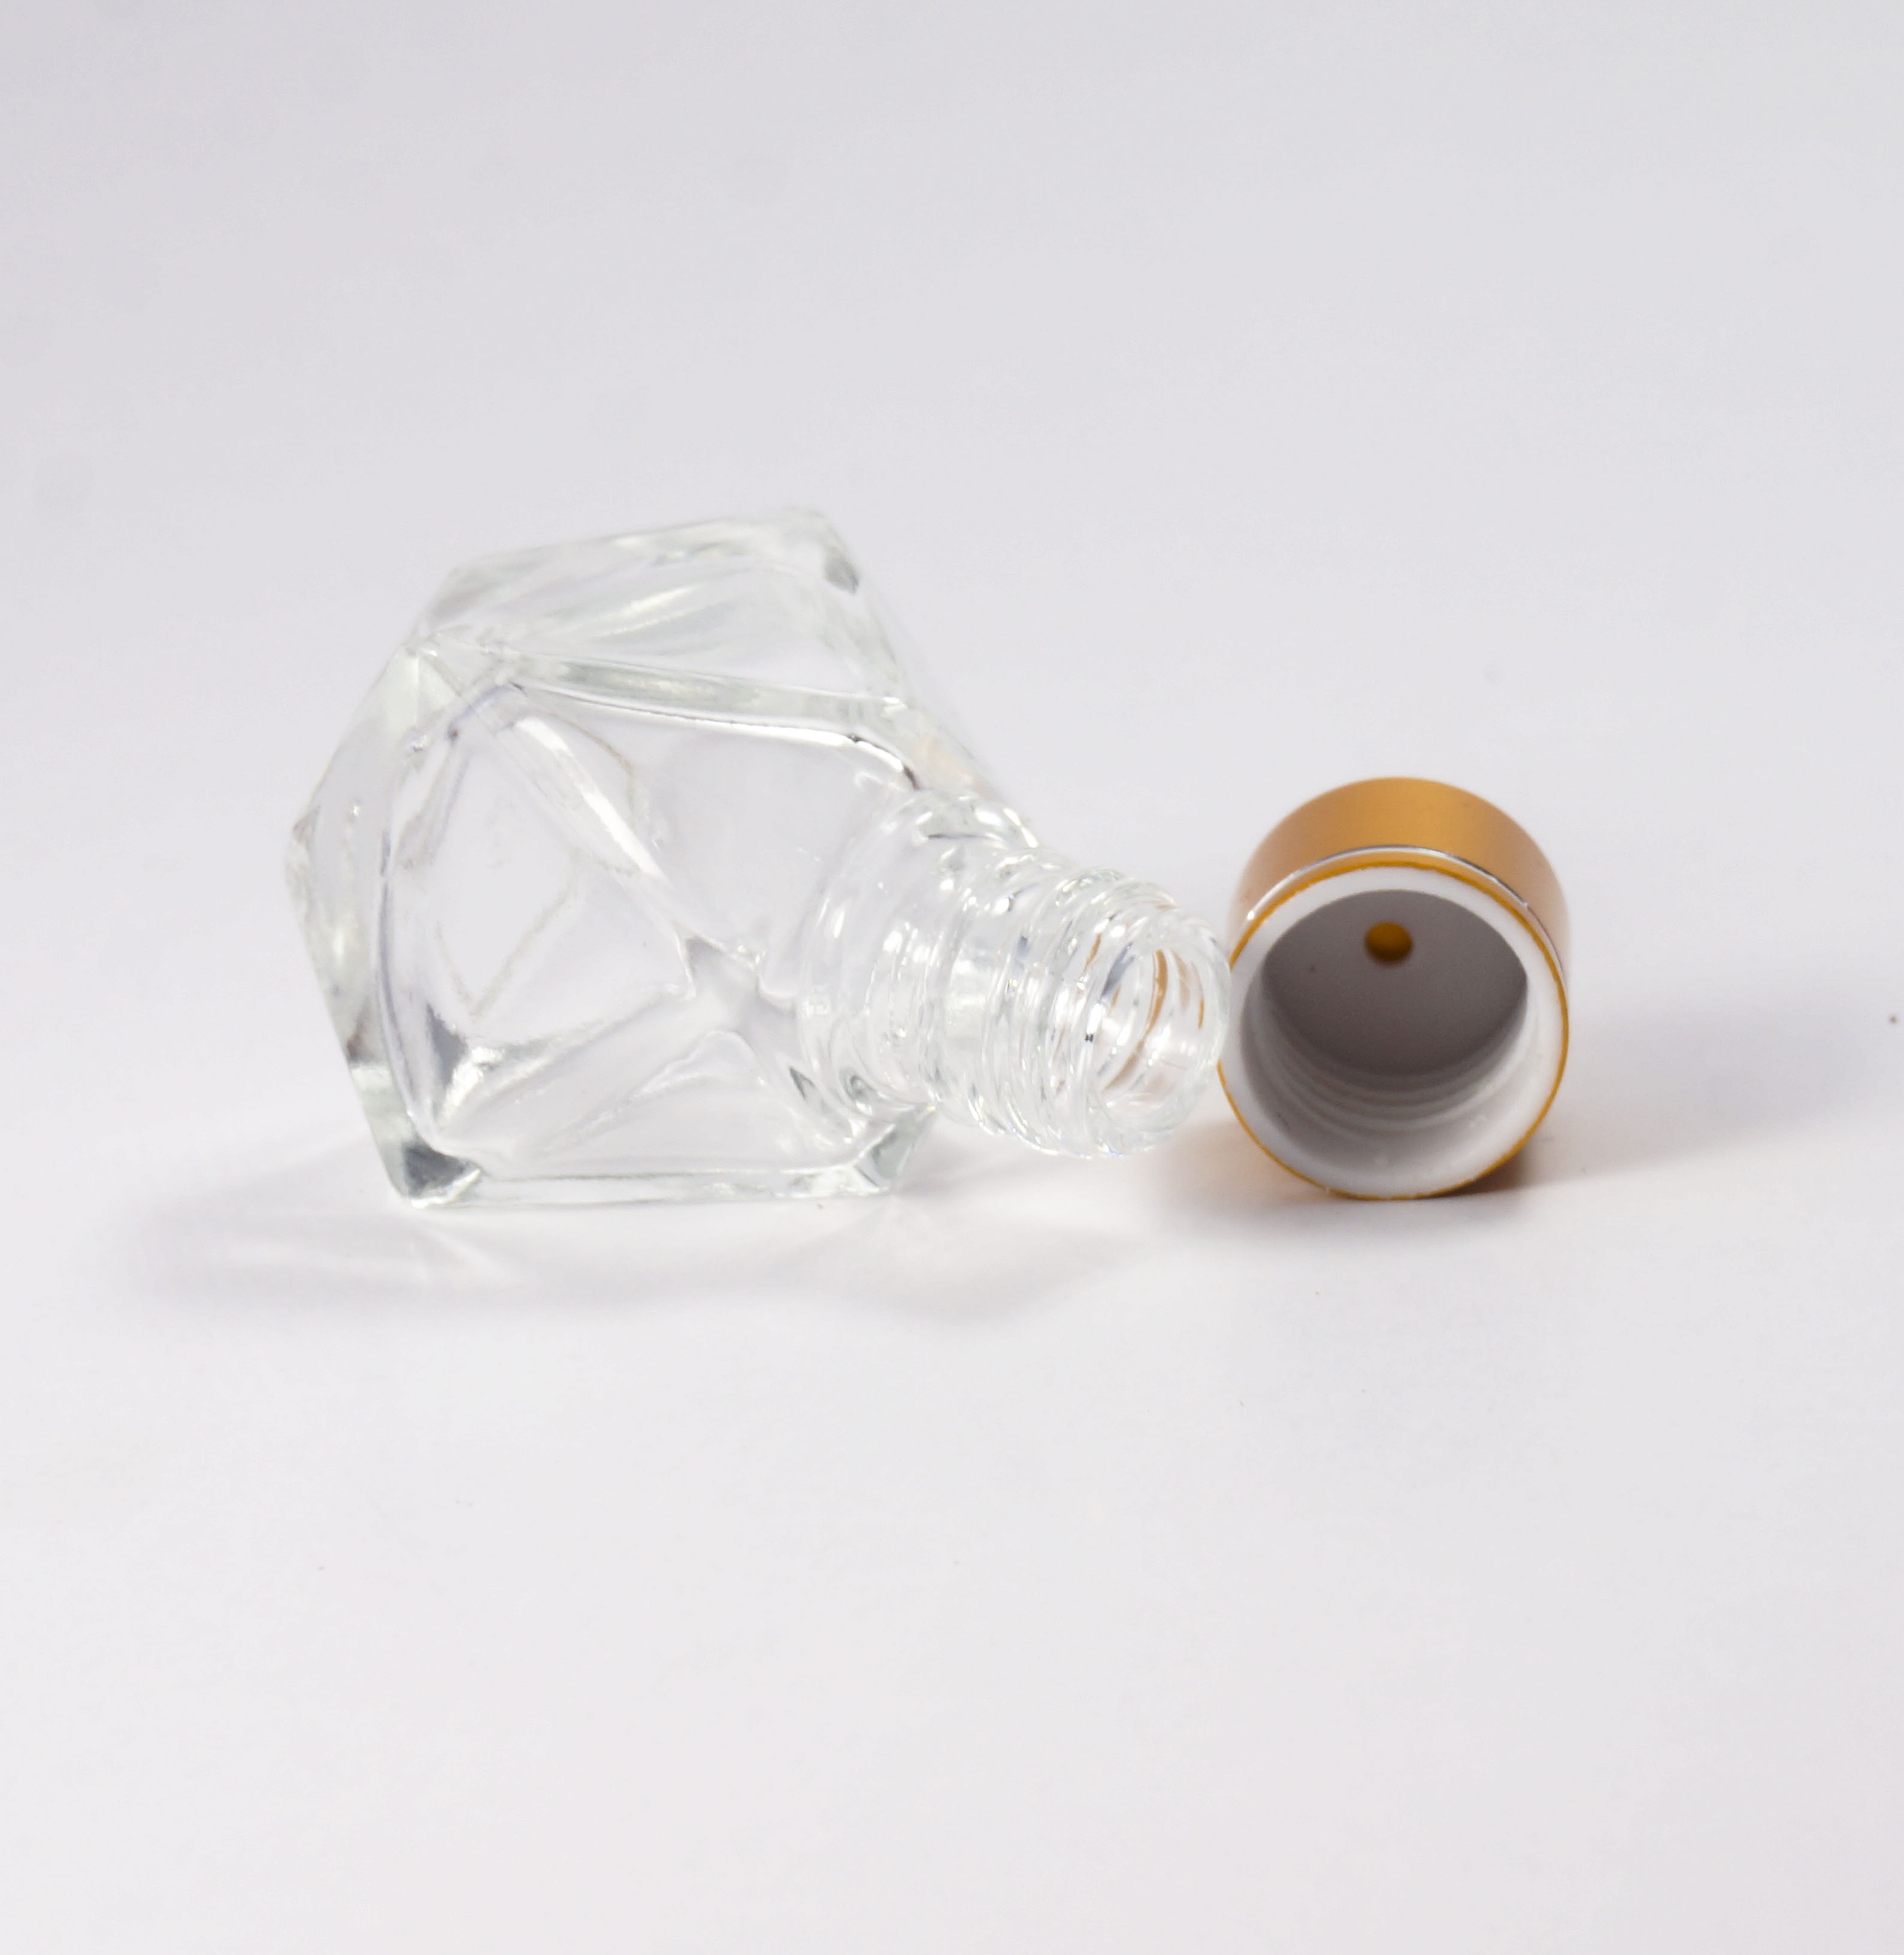 供应批发订做钻石形香水玻璃瓶 钻石形小型玻璃瓶 玻璃香水瓶